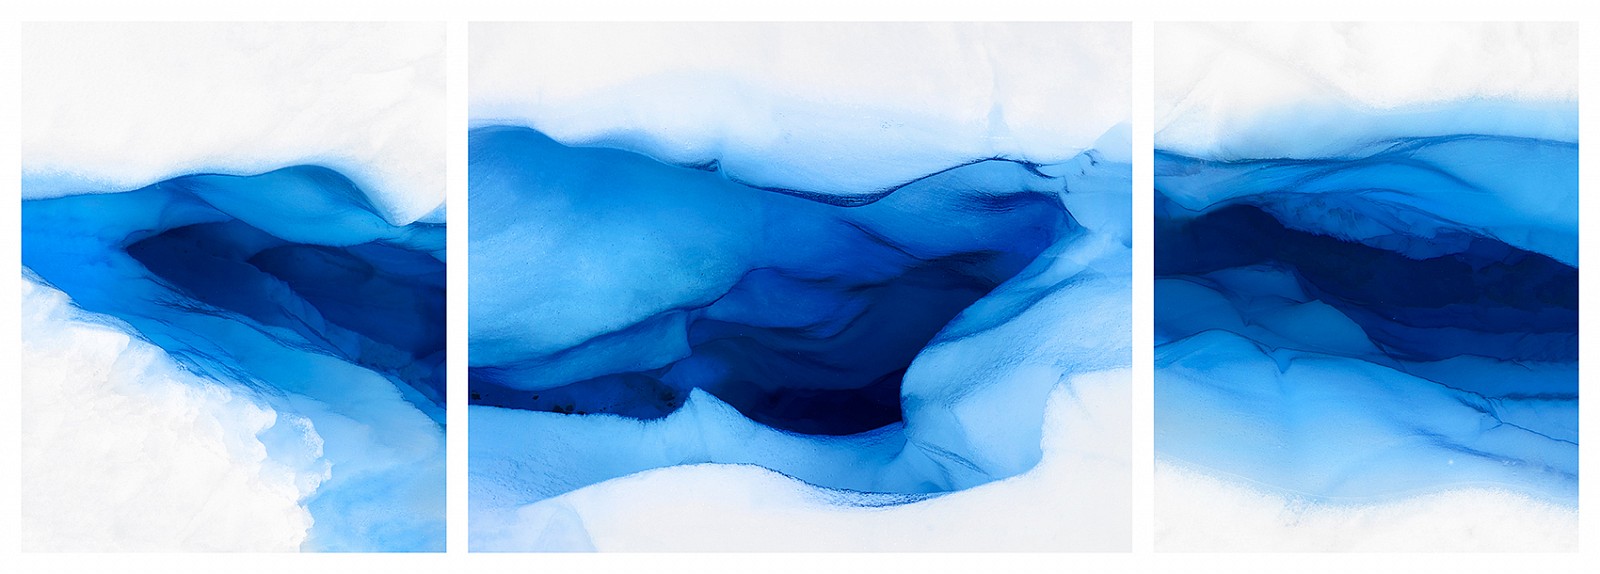 Jonathan Smith, Glacier Triptych
Chromogenic print, 30x72", 40x97", 50x120", 70x168"